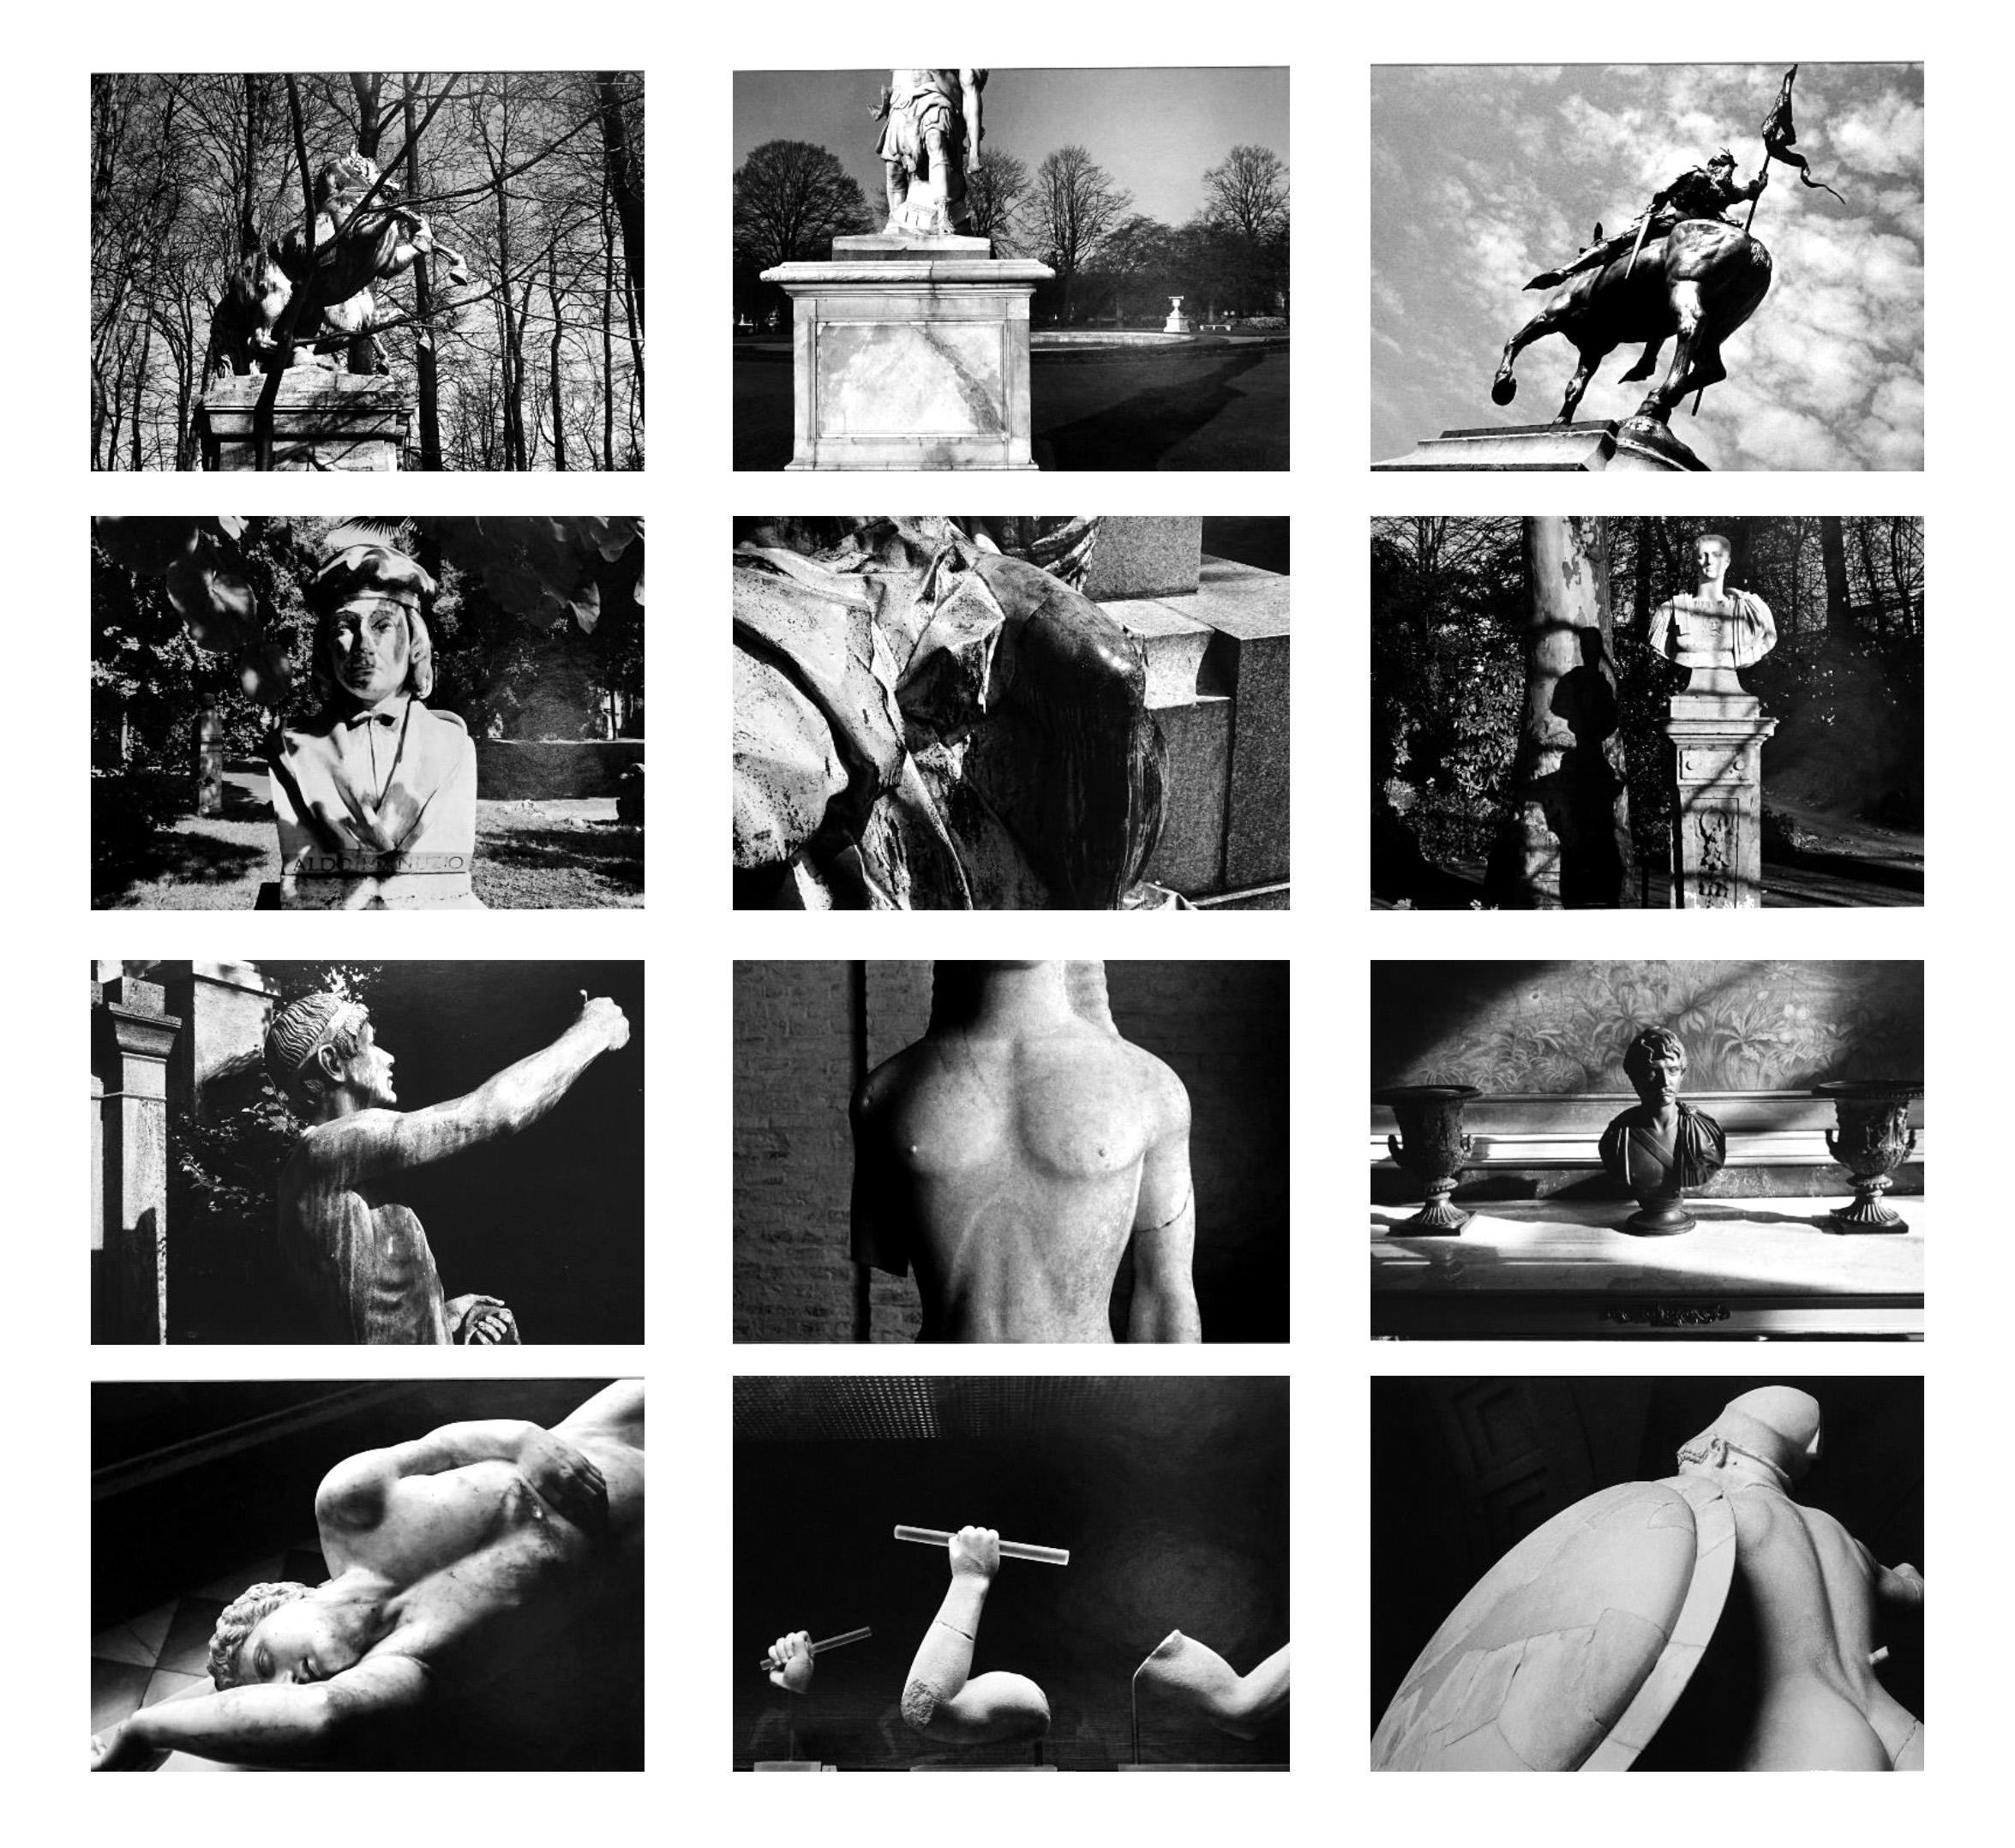 Statue - Coffret Prestige n° 7 - 1970-80, photographie minimaliste en noir et blanc